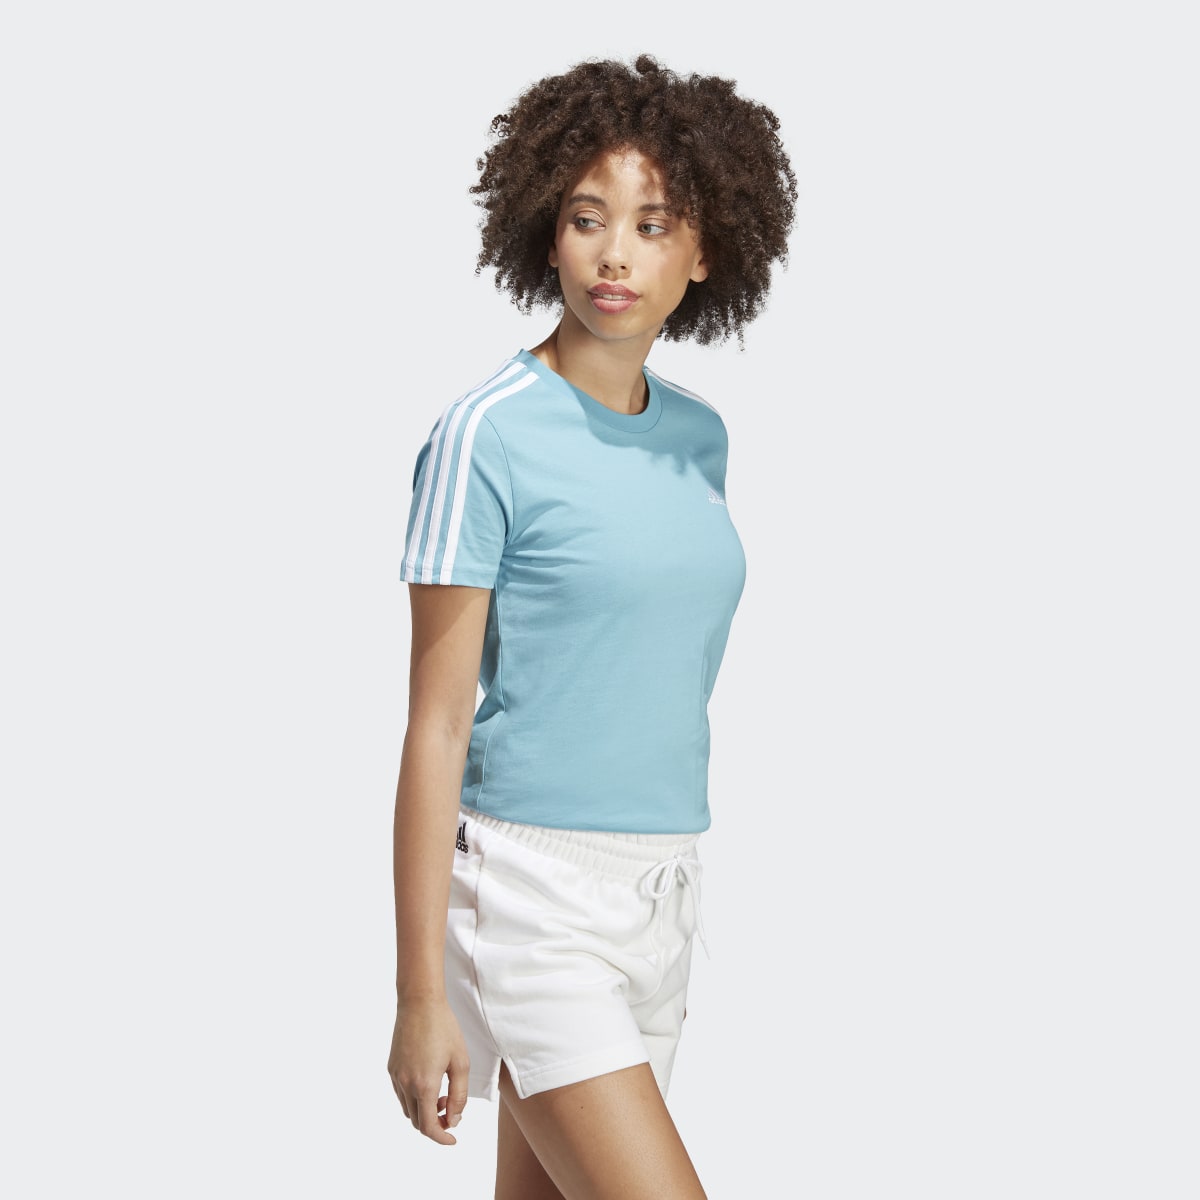 Adidas LOUNGEWEAR Essentials Slim 3-Streifen T-Shirt. 4